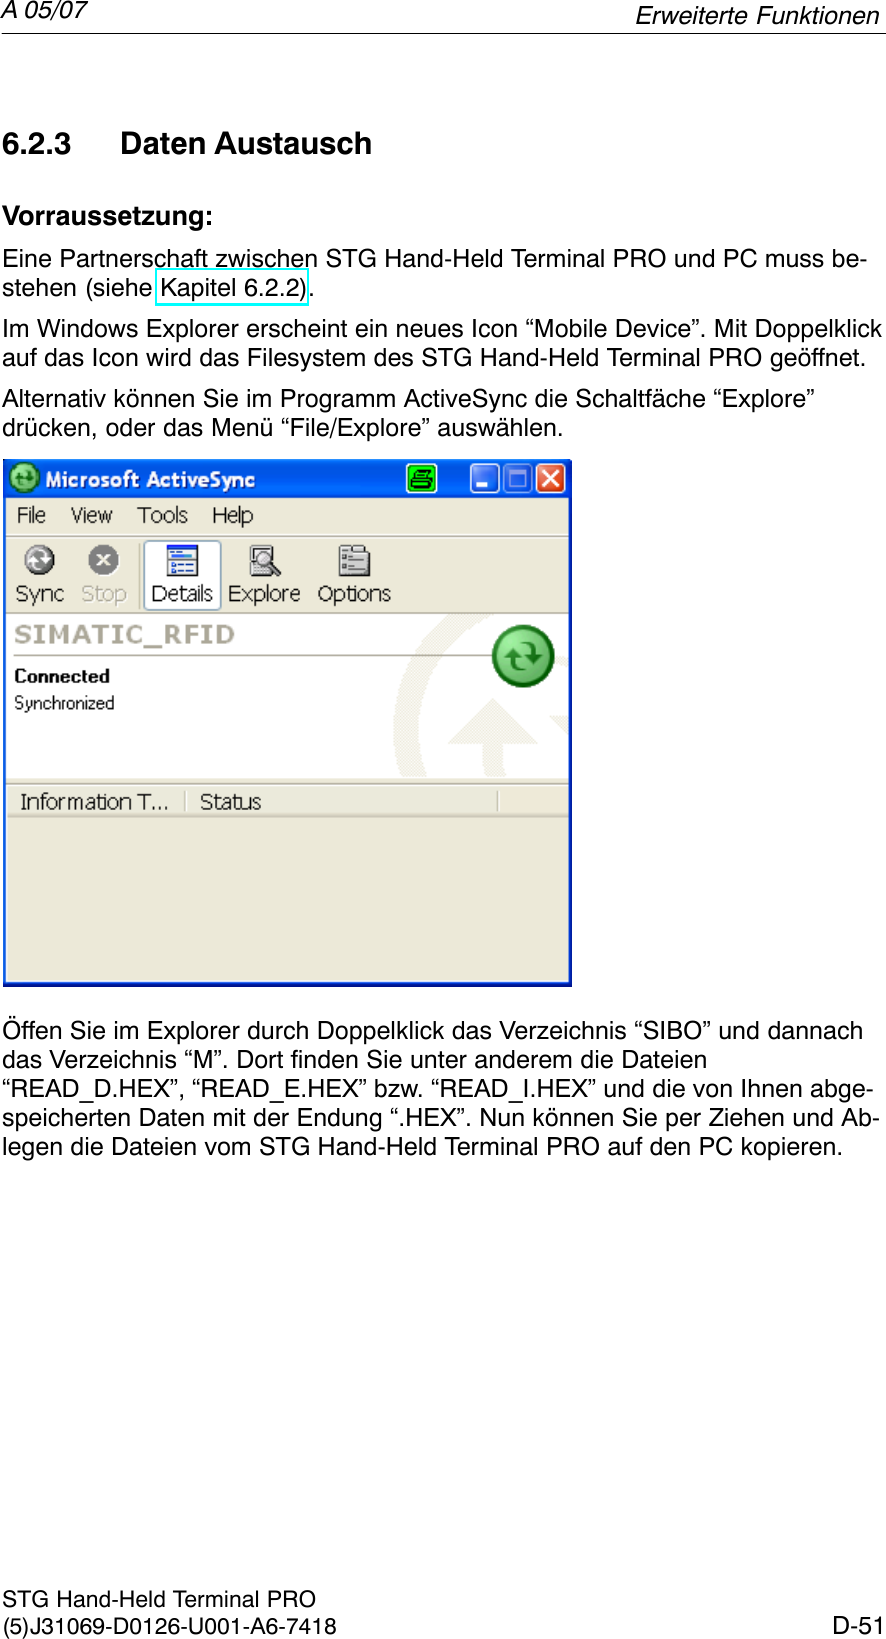 A 05/07D-51STG Hand-Held Terminal PRO(5)J31069-D0126-U001-A6-74186.2.3 Daten AustauschVorraussetzung:Eine Partnerschaft zwischen STG Hand-Held Terminal PRO und PC muss be-stehen (siehe Kapitel 6.2.2).Im Windows Explorer erscheint ein neues Icon “Mobile Device”. Mit Doppelklickauf das Icon wird das Filesystem des STG Hand-Held Terminal PRO geöffnet.Alternativ können Sie im Programm ActiveSync die Schaltfäche “Explore” drücken, oder das Menü “File/Explore” auswählen.Öffen Sie im Explorer durch Doppelklick das Verzeichnis “SIBO” und dannachdas Verzeichnis “M”. Dort finden Sie unter anderem die Dateien“READ_D.HEX”, “READ_E.HEX” bzw. “READ_I.HEX” und die von Ihnen abge-speicherten Daten mit der Endung “.HEX”. Nun können Sie per Ziehen und Ab-legen die Dateien vom STG Hand-Held Terminal PRO auf den PC kopieren.Erweiterte Funktionen